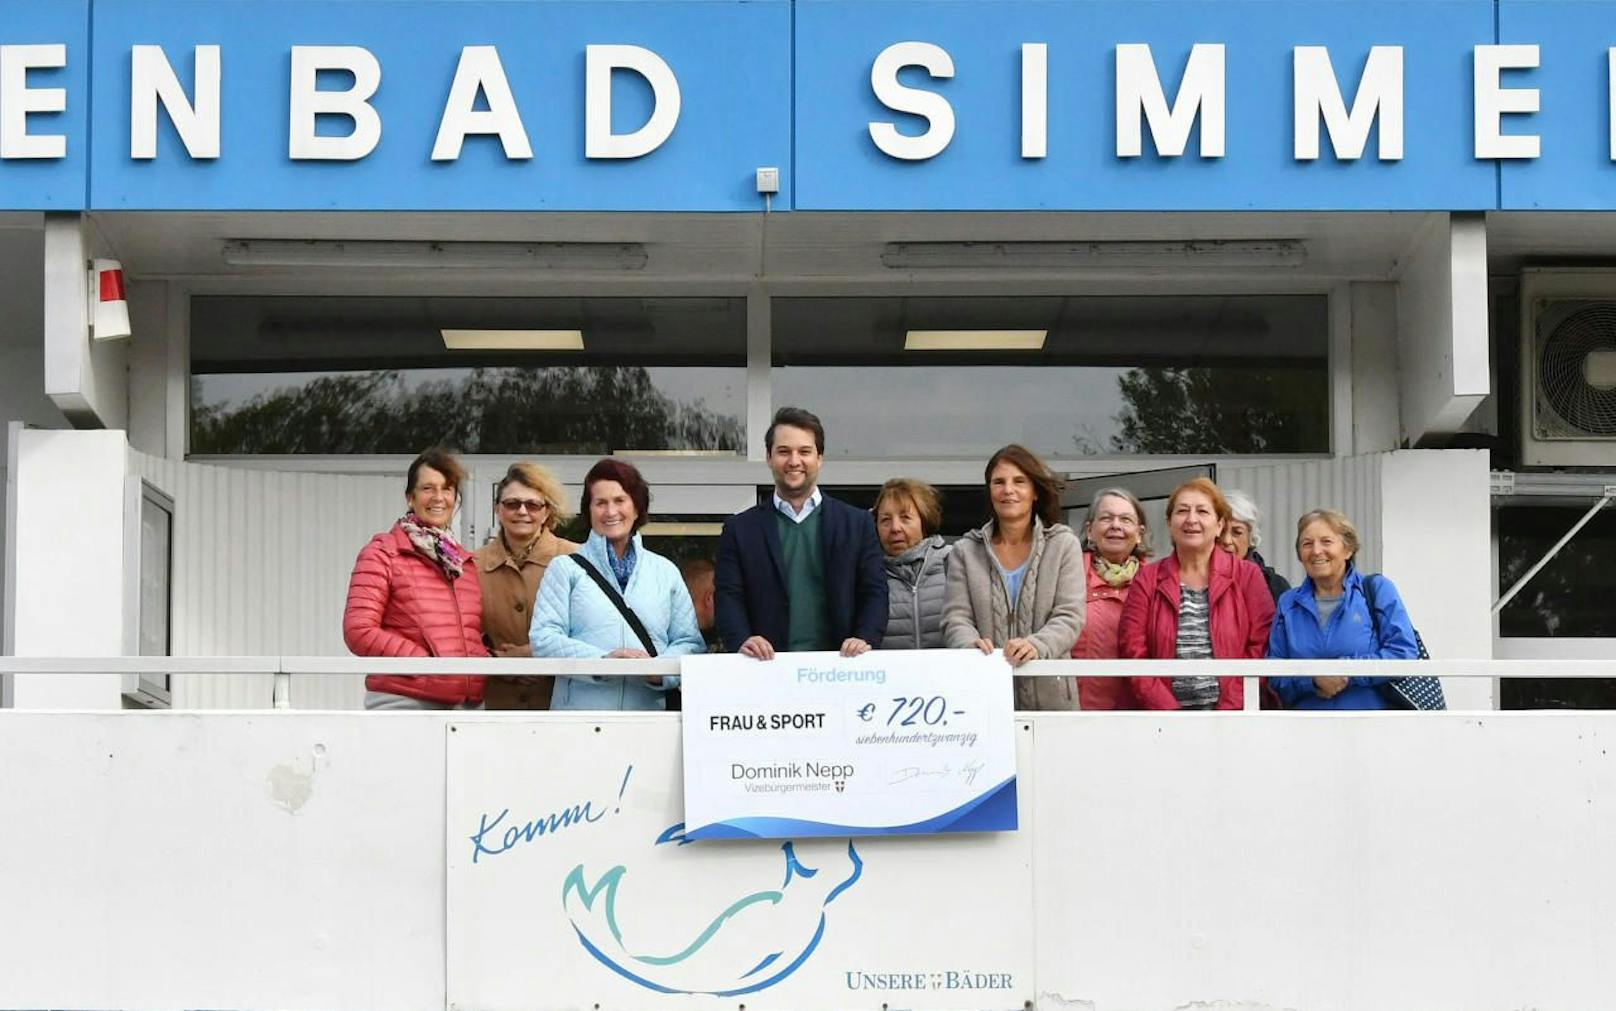 MA51 streicht Förderung von Frauen-Schwimmkursen, FP-Vizebürgermeister Dominik Nepp (Mitte) springt ein. (c) FPÖ Wien